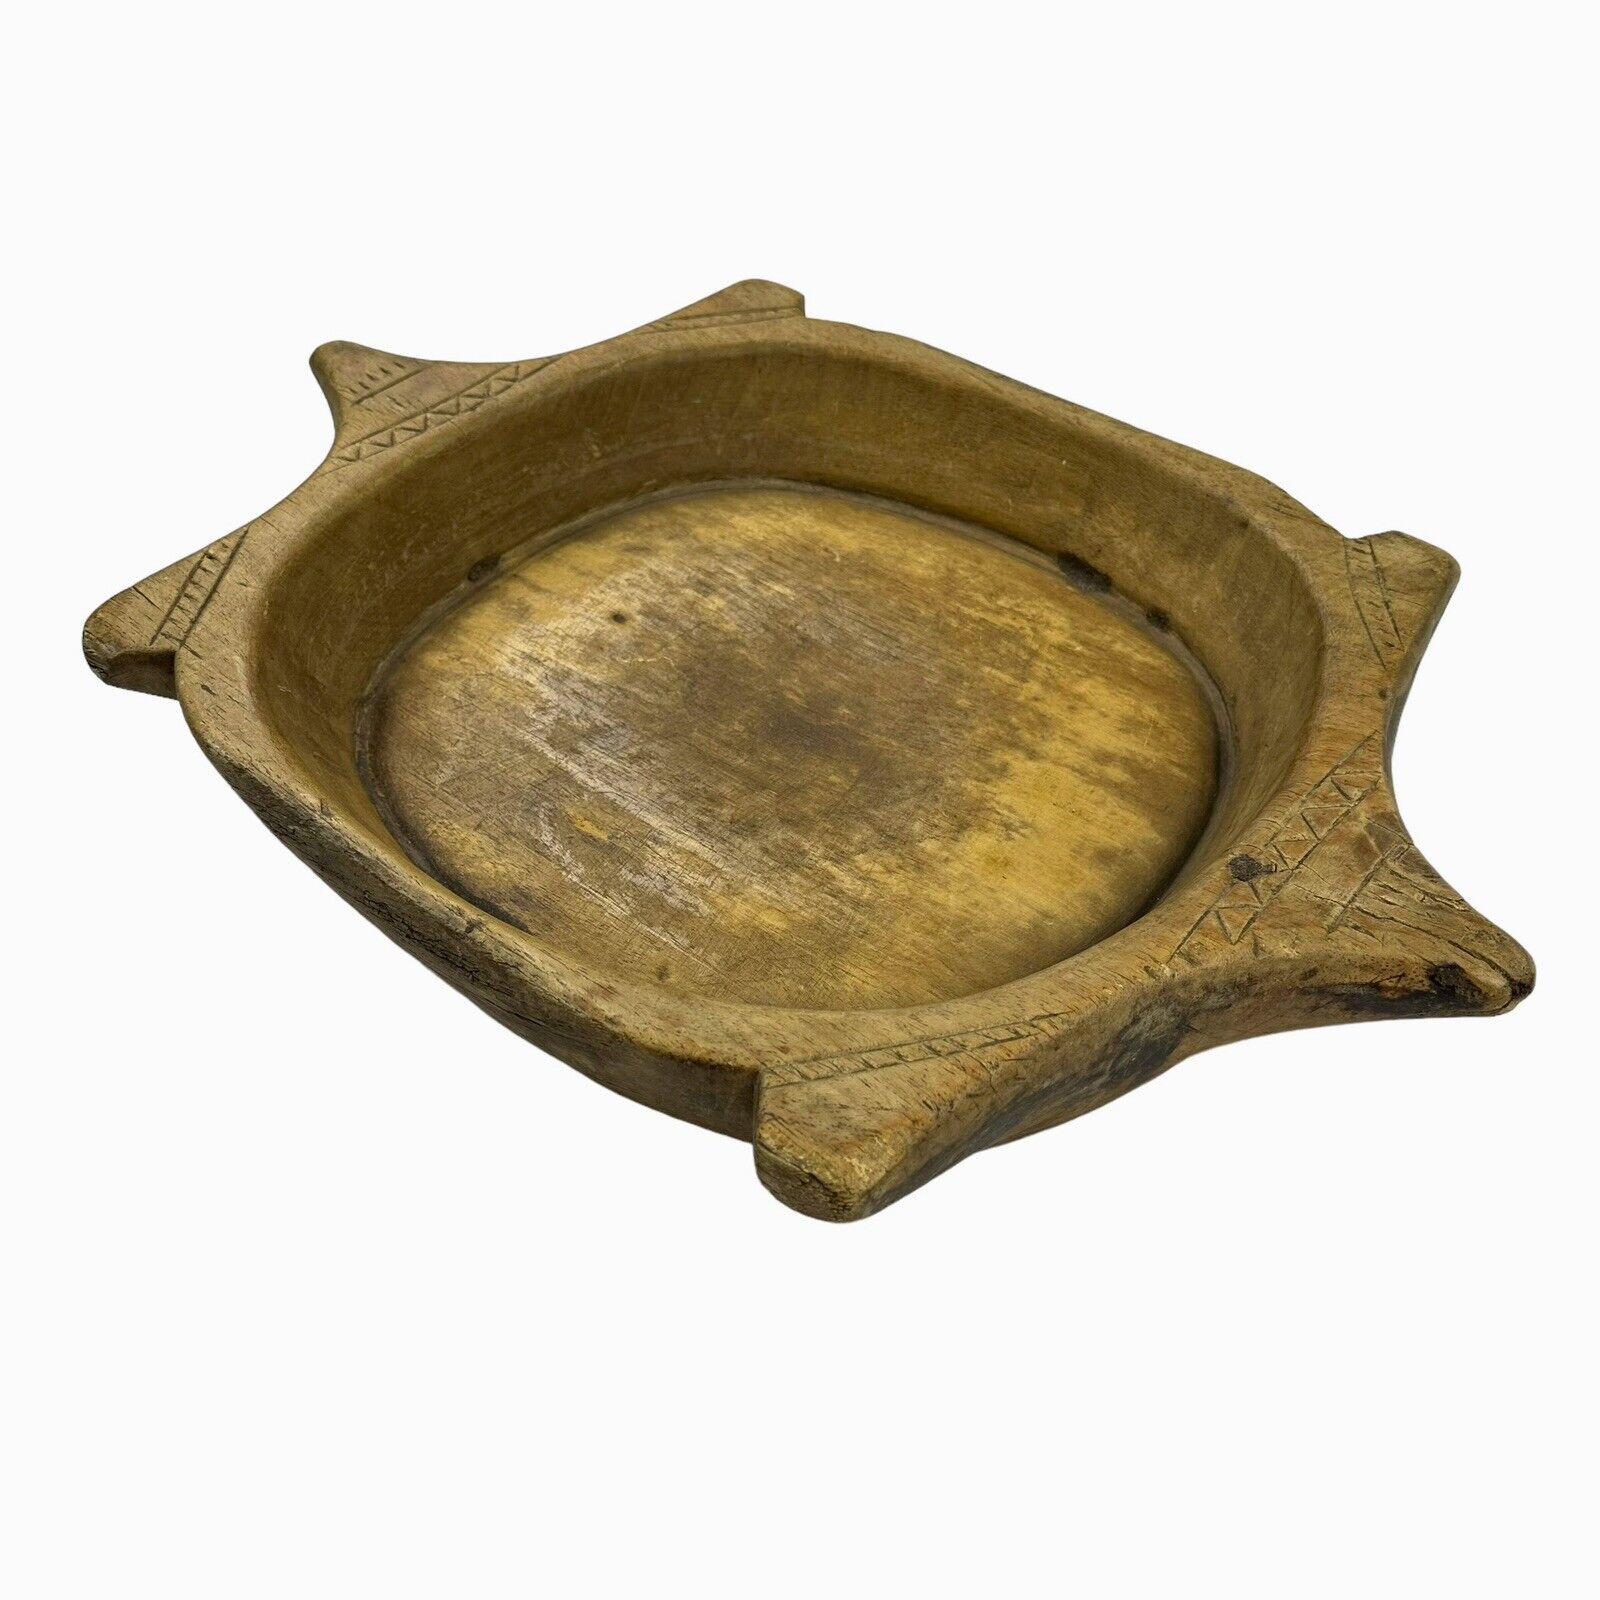 Big Primitive Antique Hand Carved Wooden Turtle Shape Chapati Dough Bowl Platter